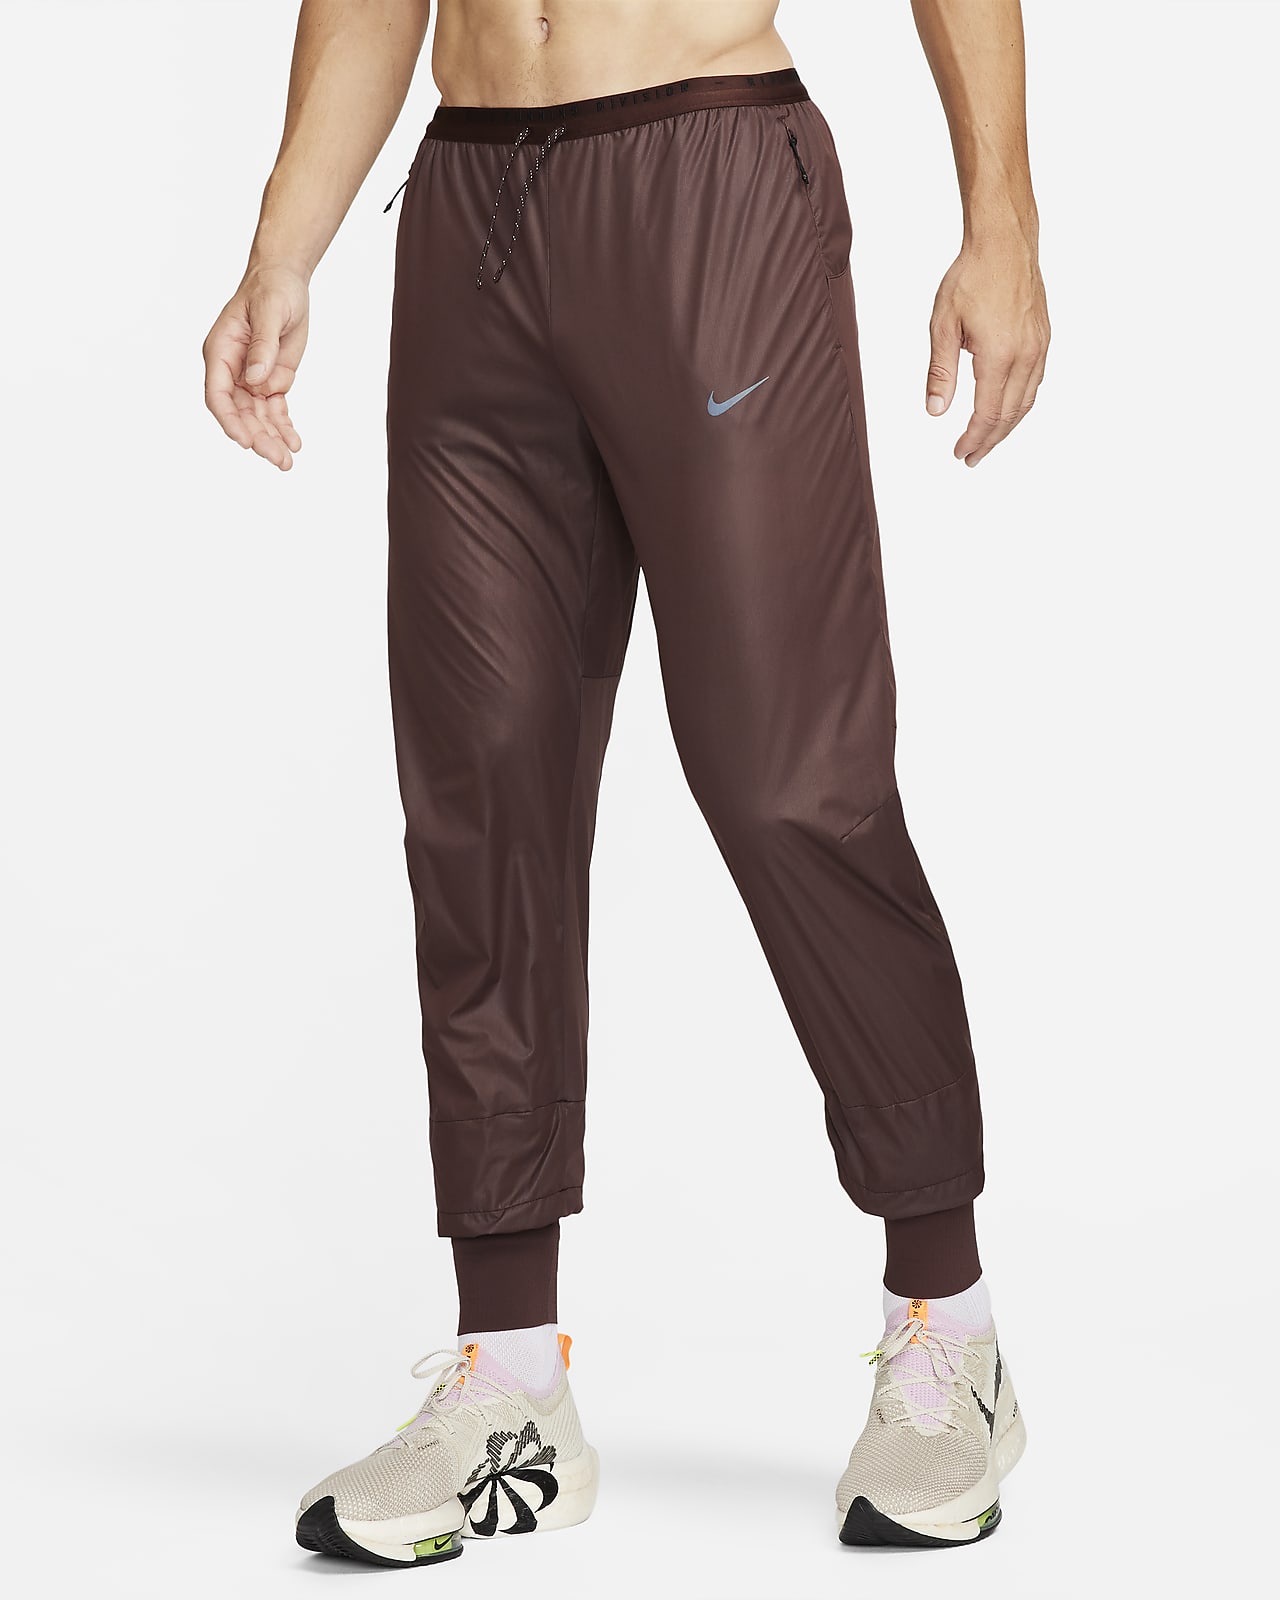 Nike Dri-Fit Yoga Pants